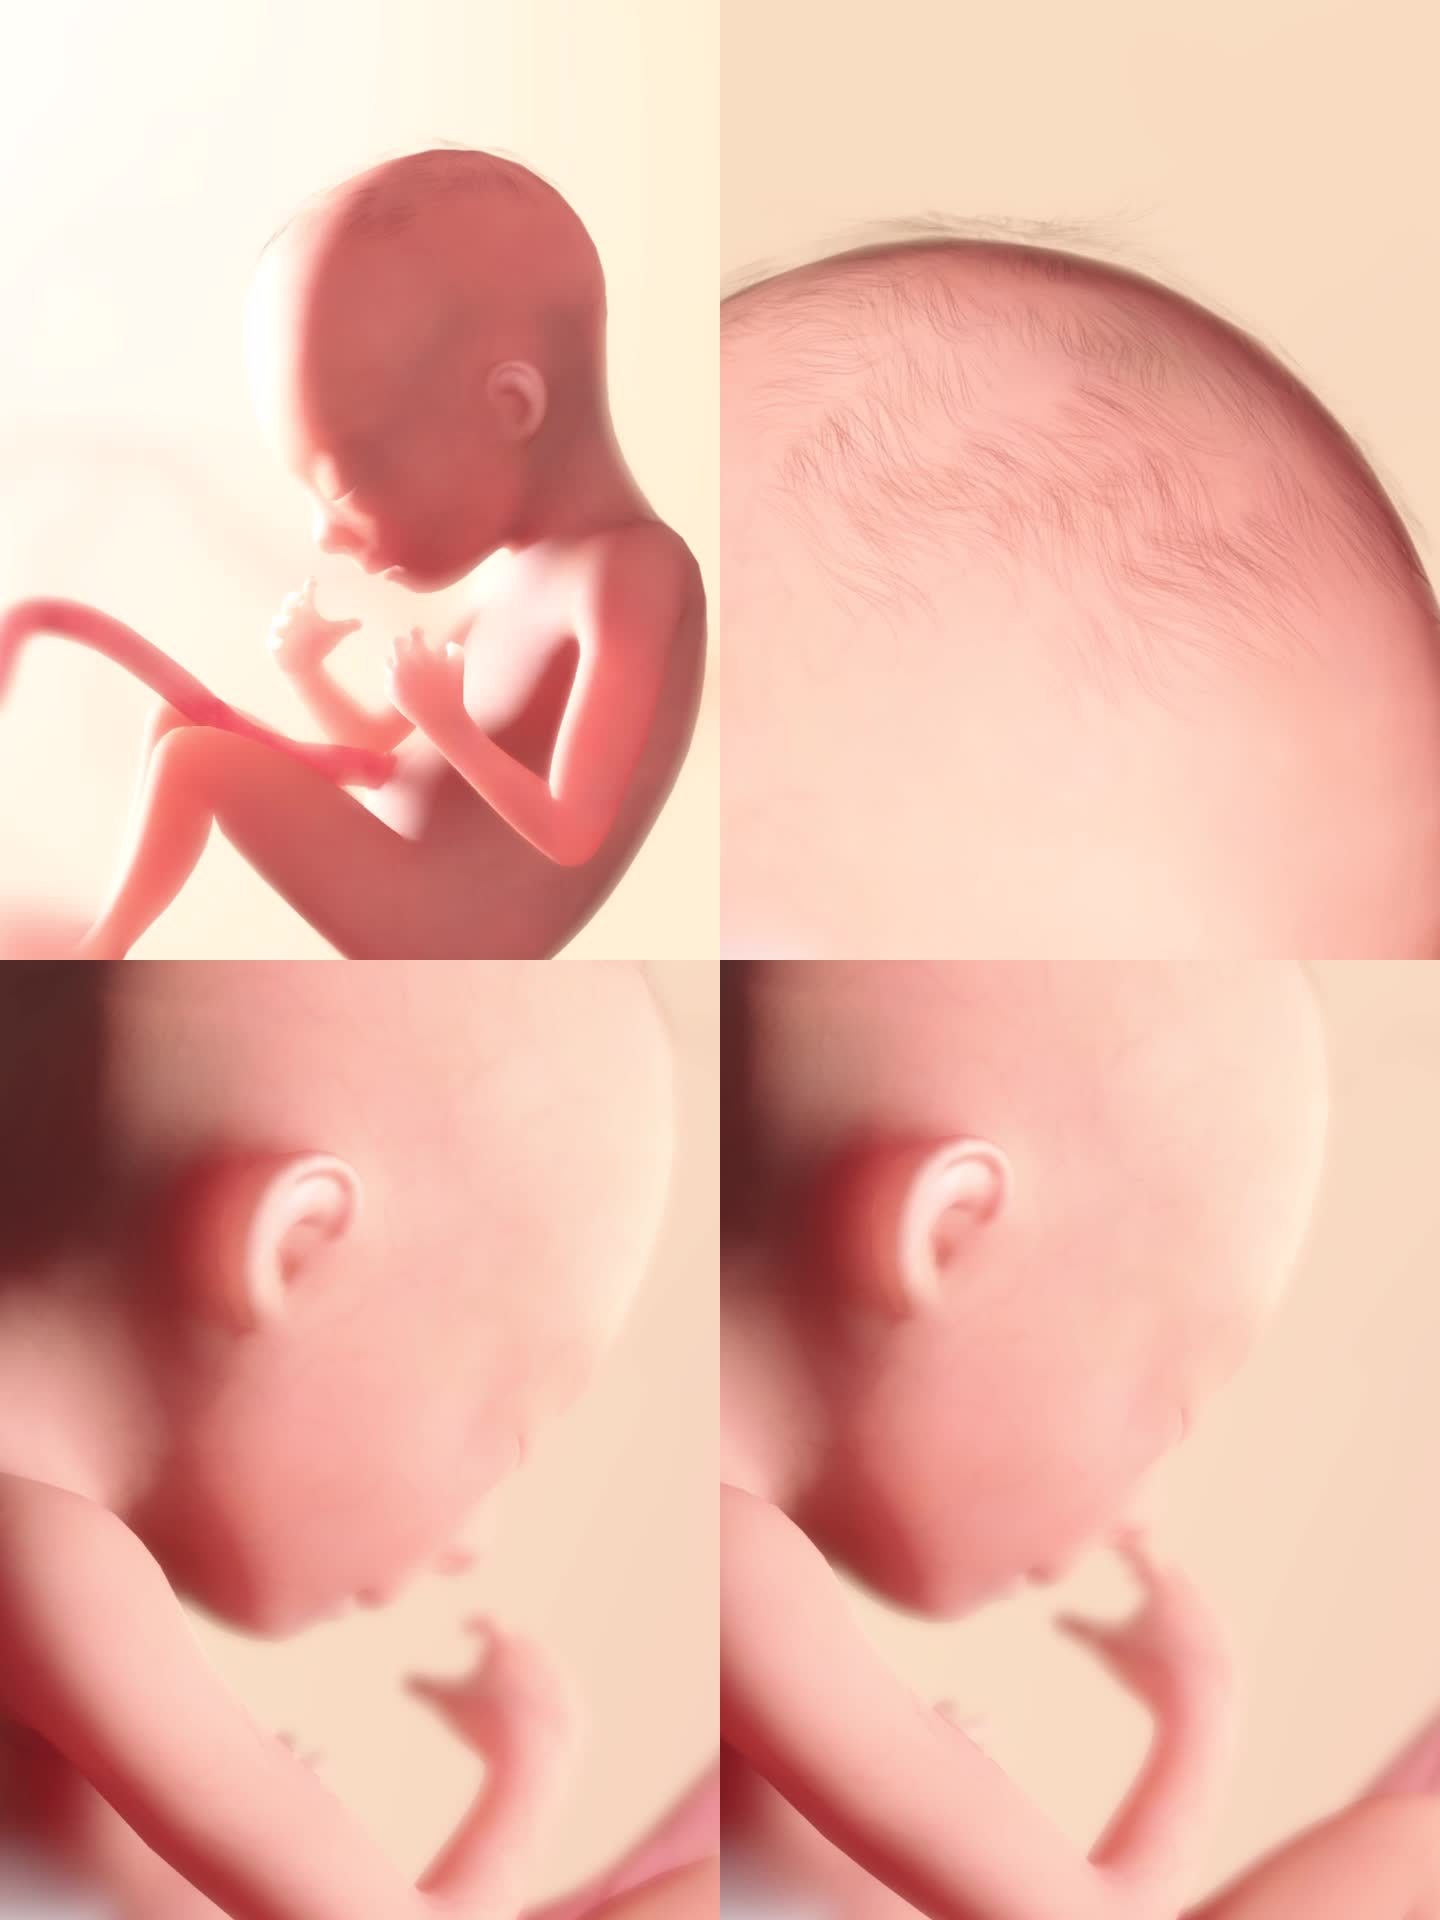 胚胎发育过程14周吮吸反射打哈欠妊娠期